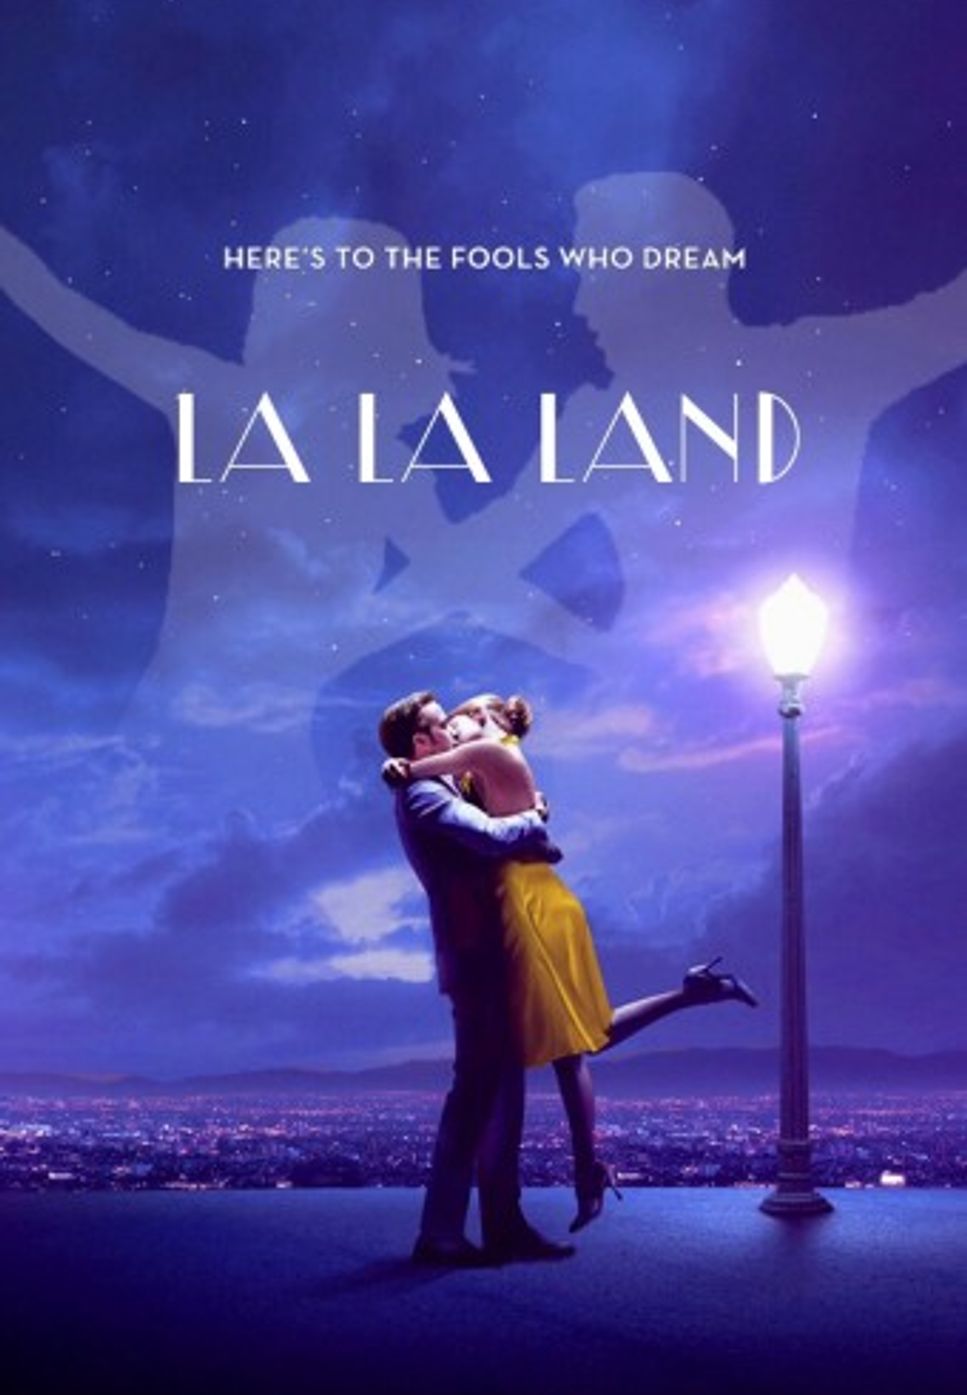 영화 '라라랜드' 'La La Land' - [바이올린+피아노악보]미아 & 세바스찬 멜로디 by 바이올리니스트 오유진